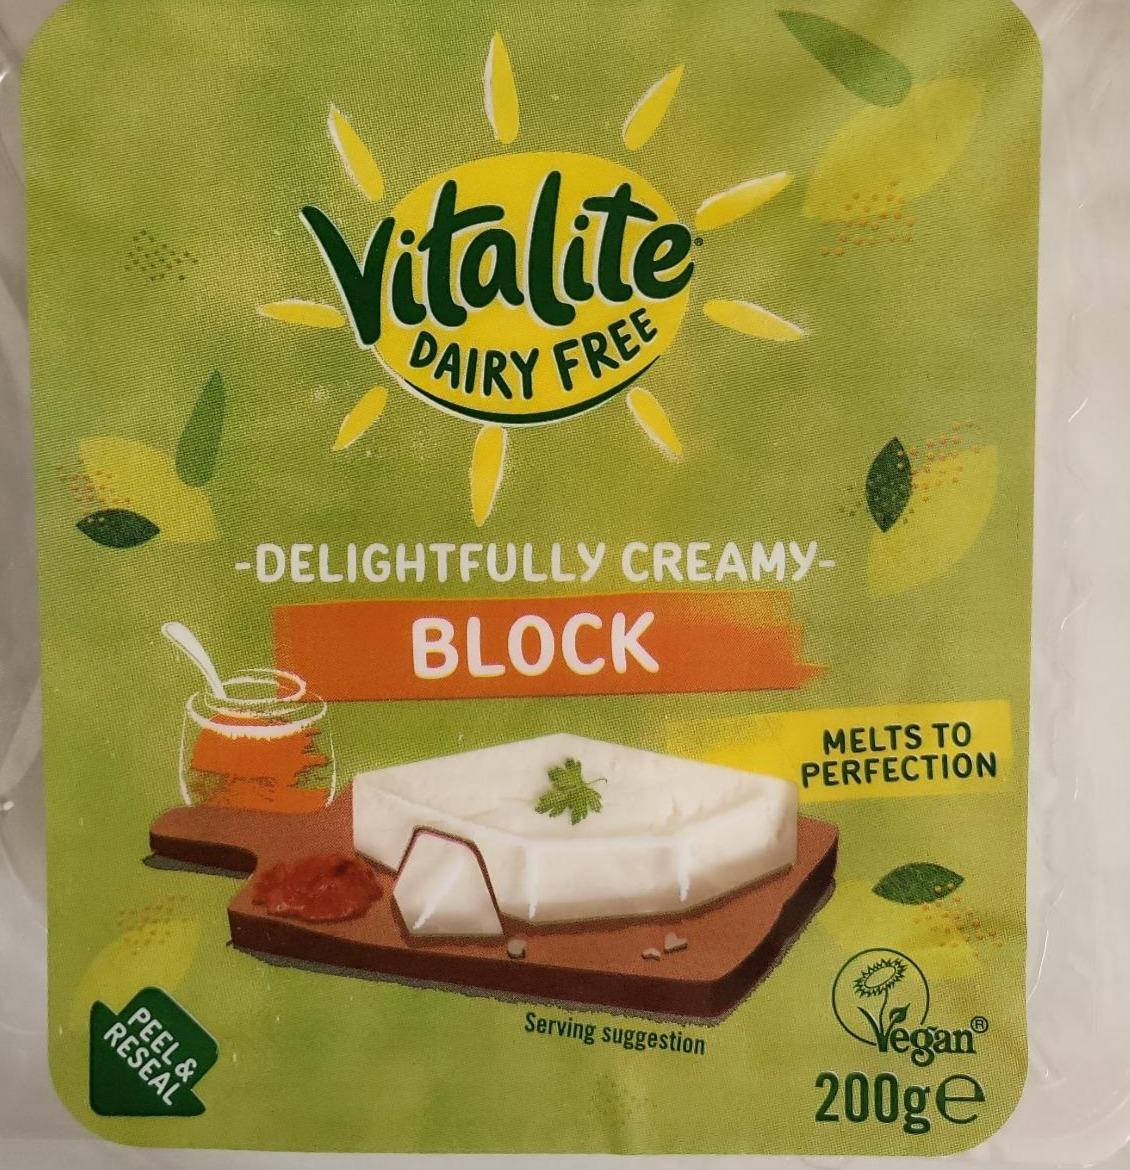 Fotografie - Delightfully creamy block Vitalite